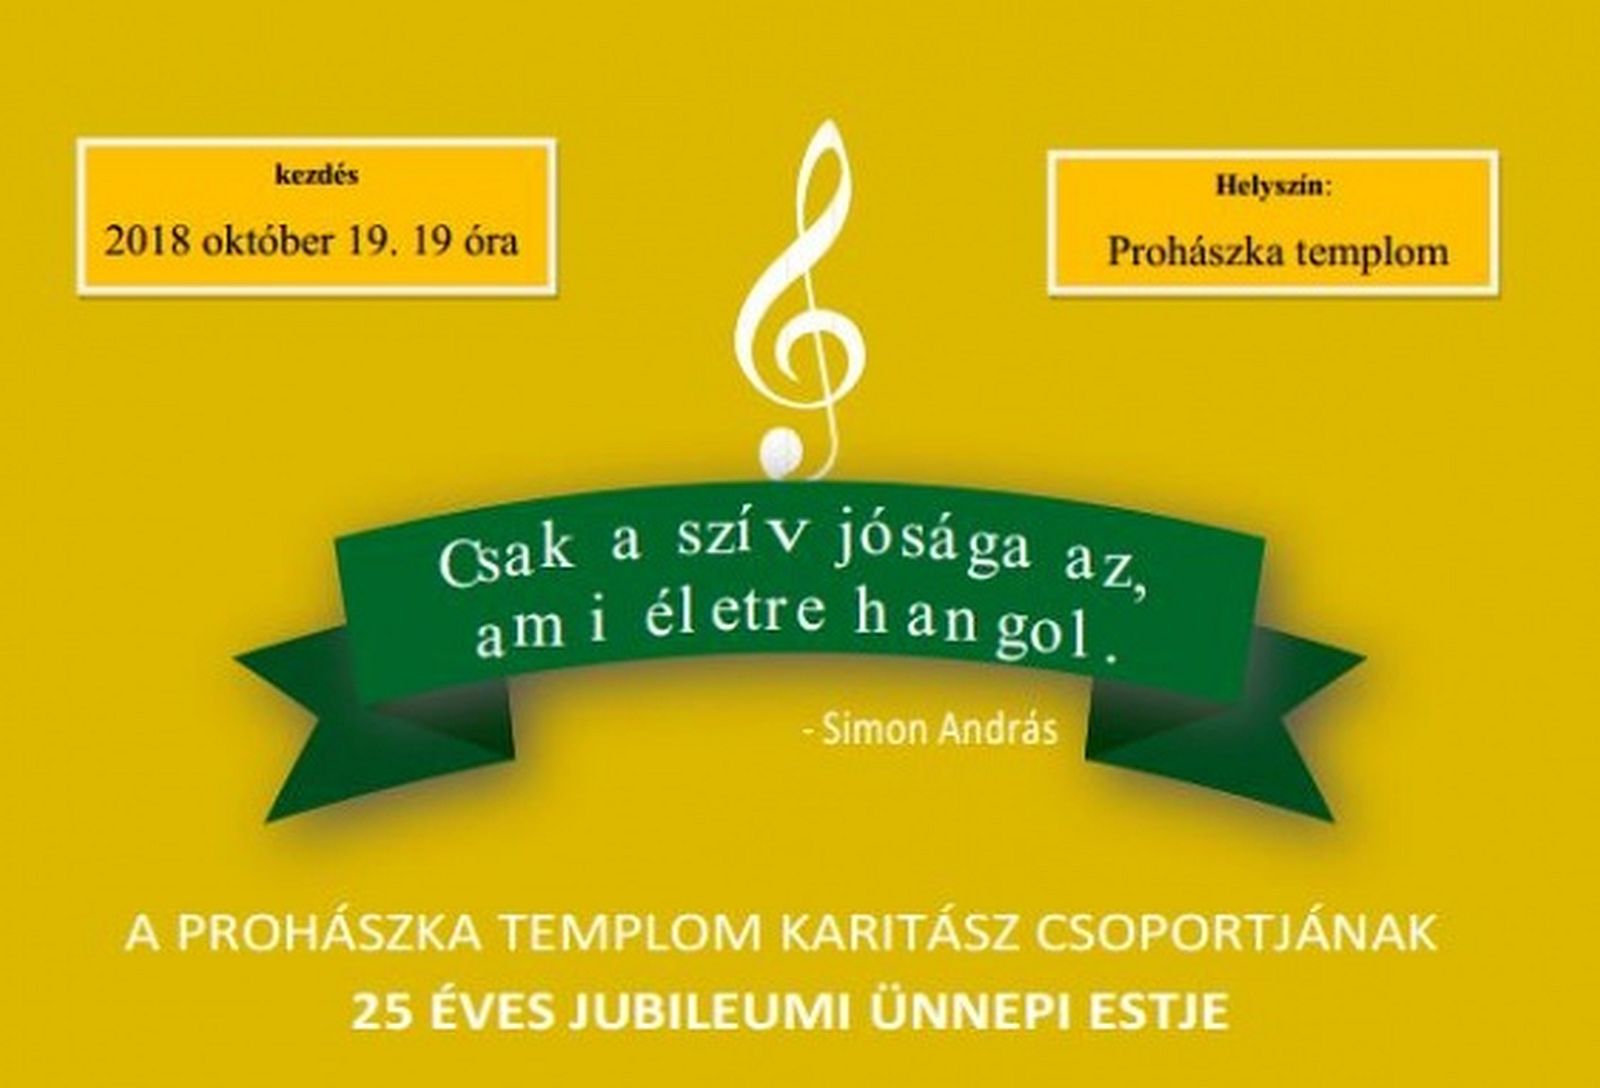 25 esztendős a Prohászka-templom Karitász csoportja - jótékonysági est lesz pénteken